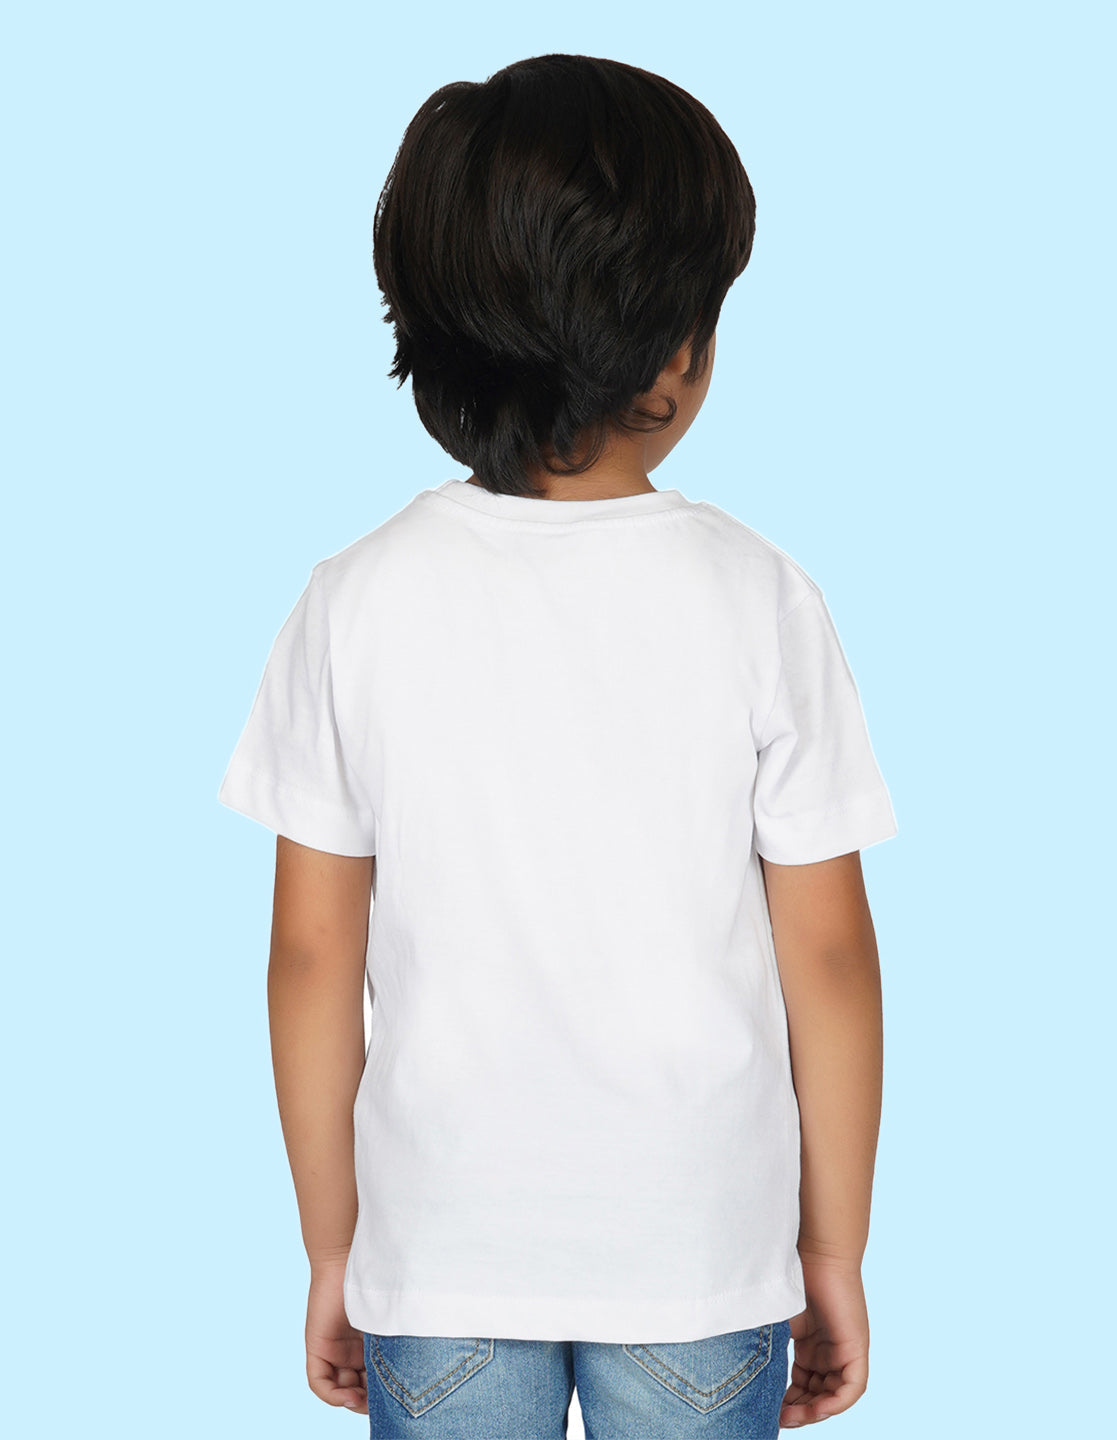 Nusyl Boys White Grow Printed t-shirt